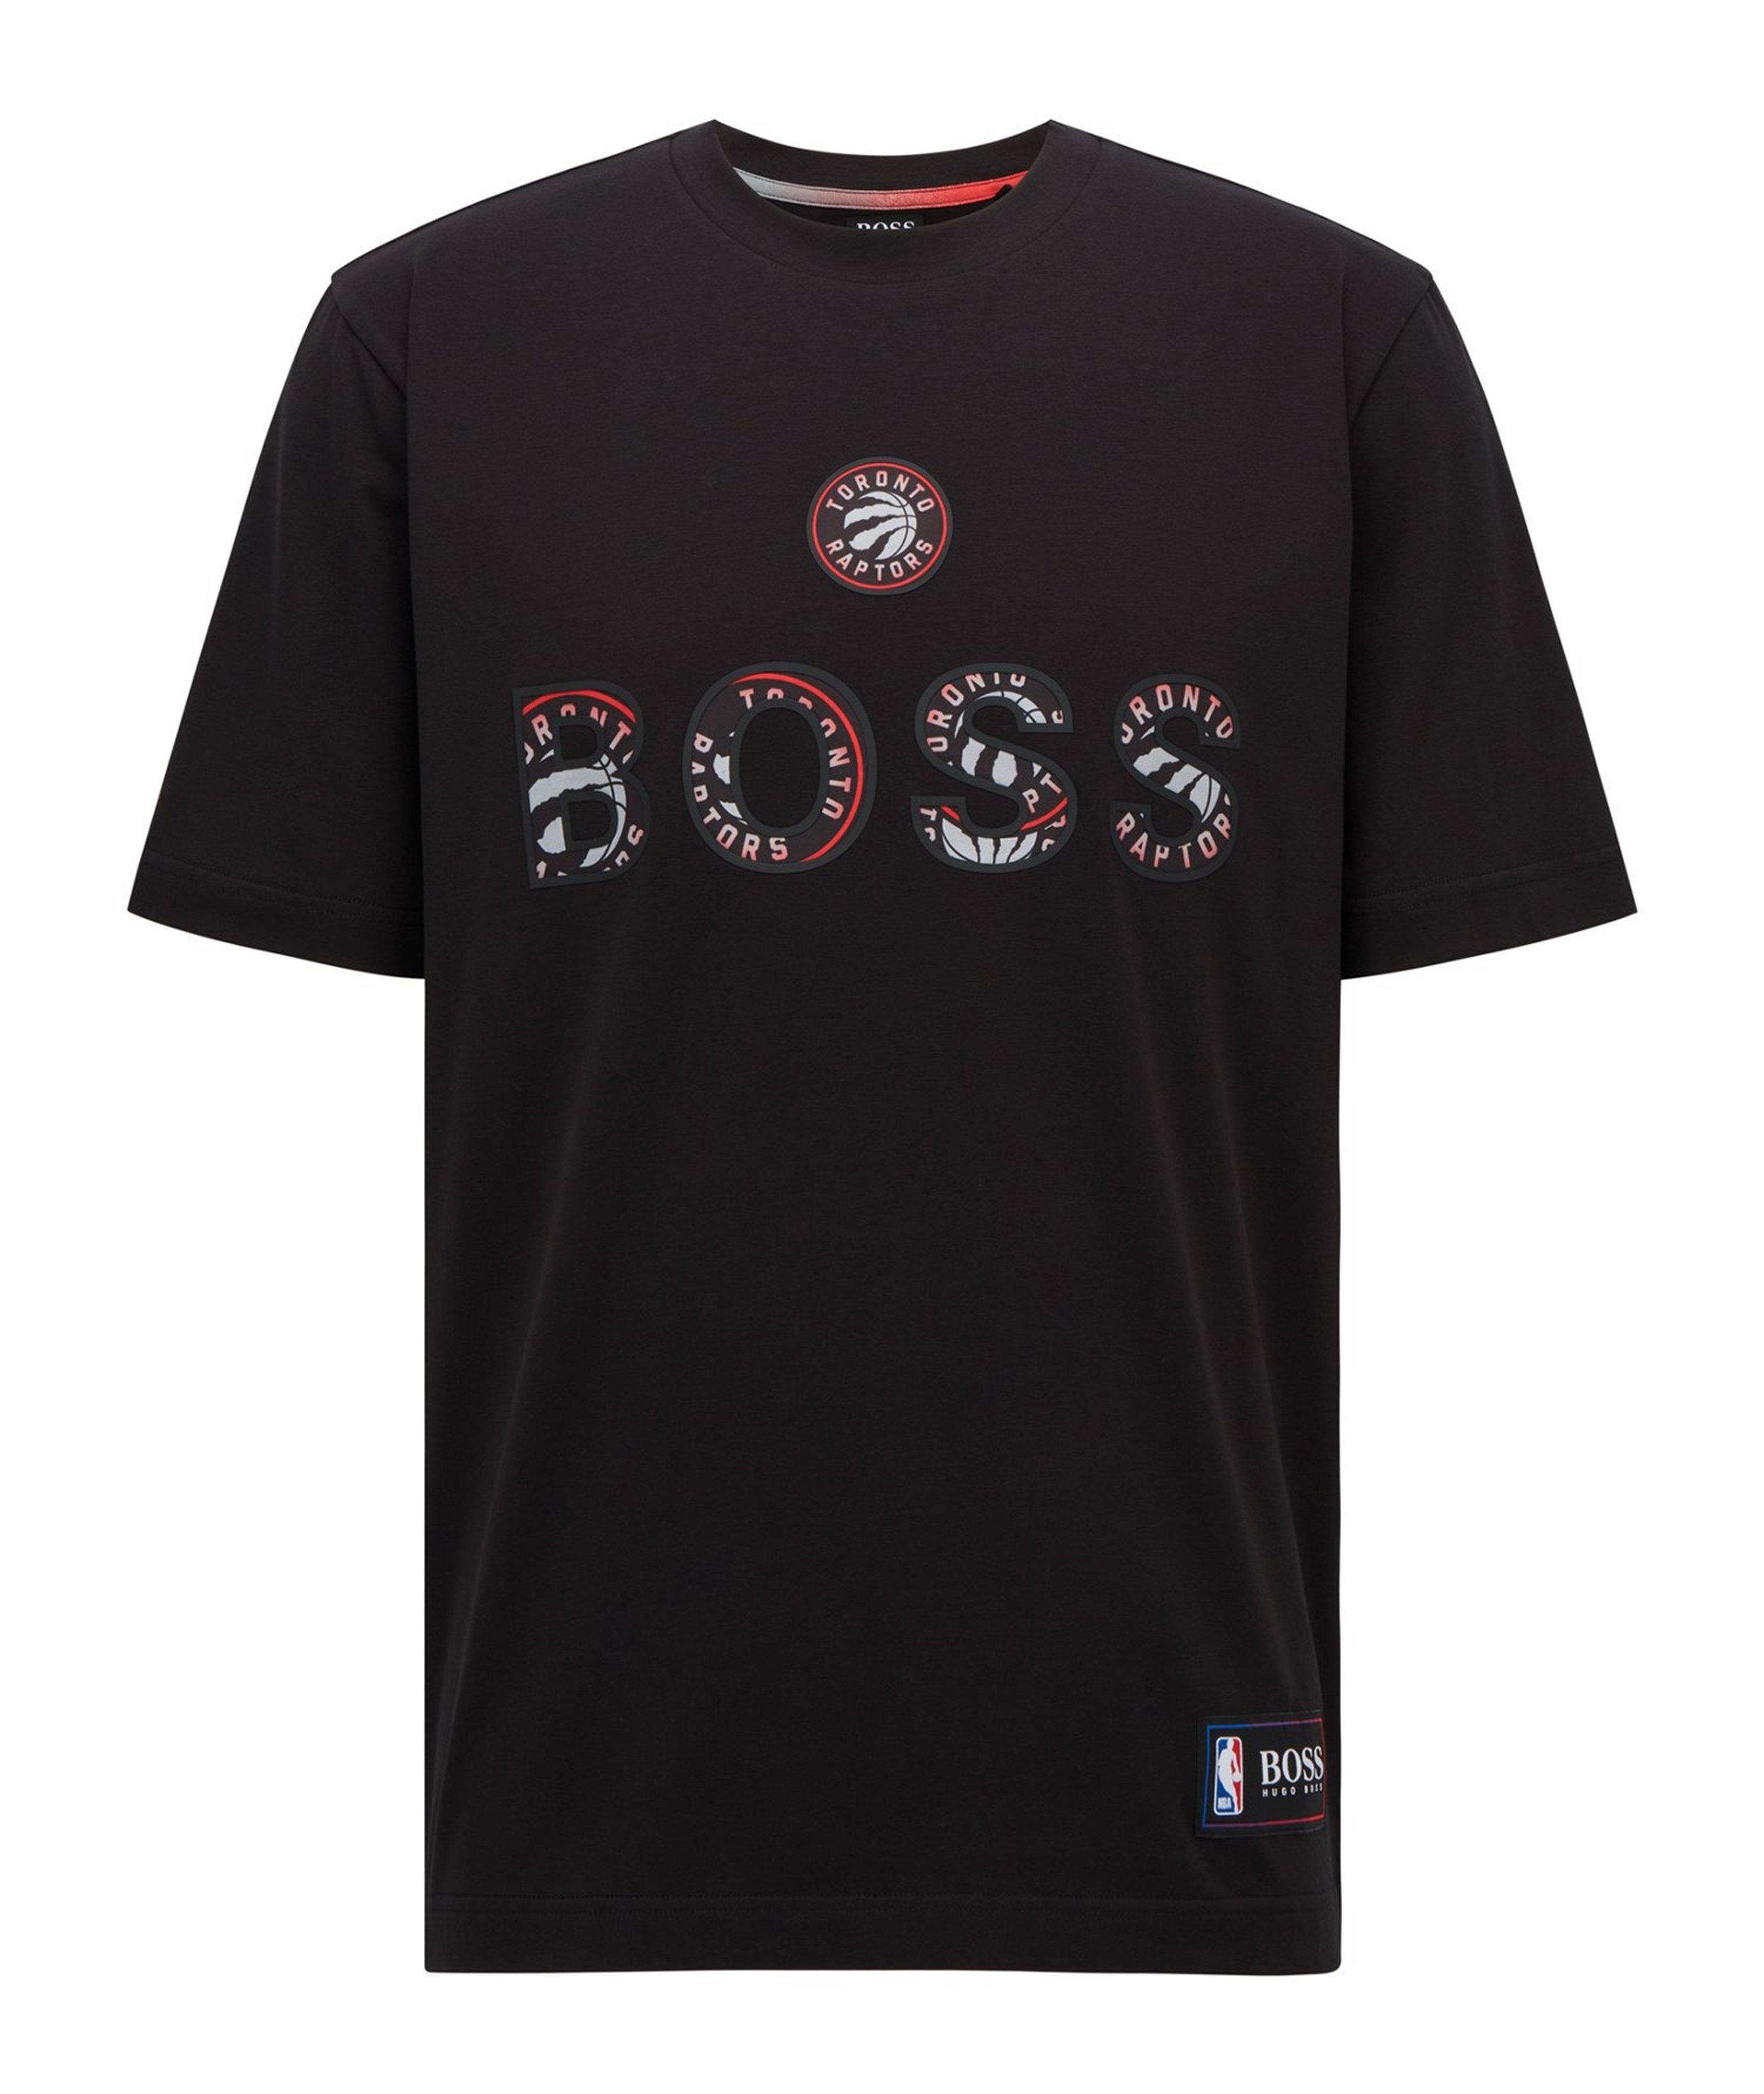 T-shirt en coton extensible, collection NBA image 0